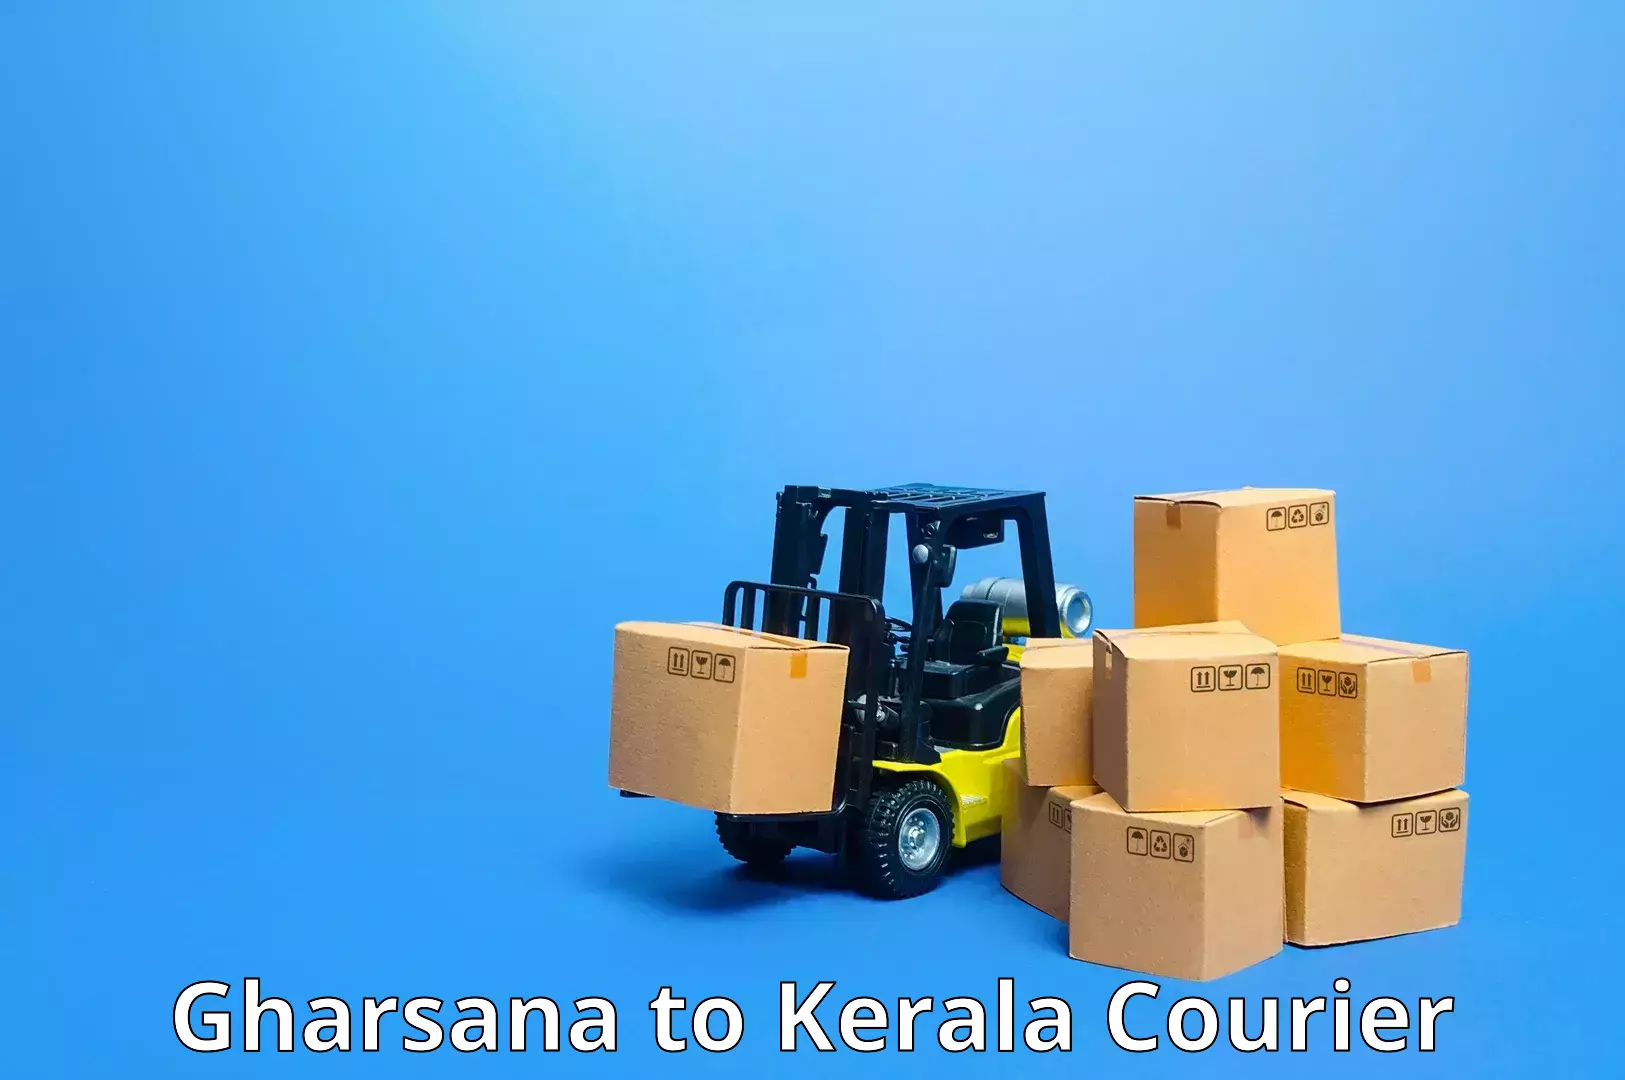 Cargo delivery service Gharsana to Kerala